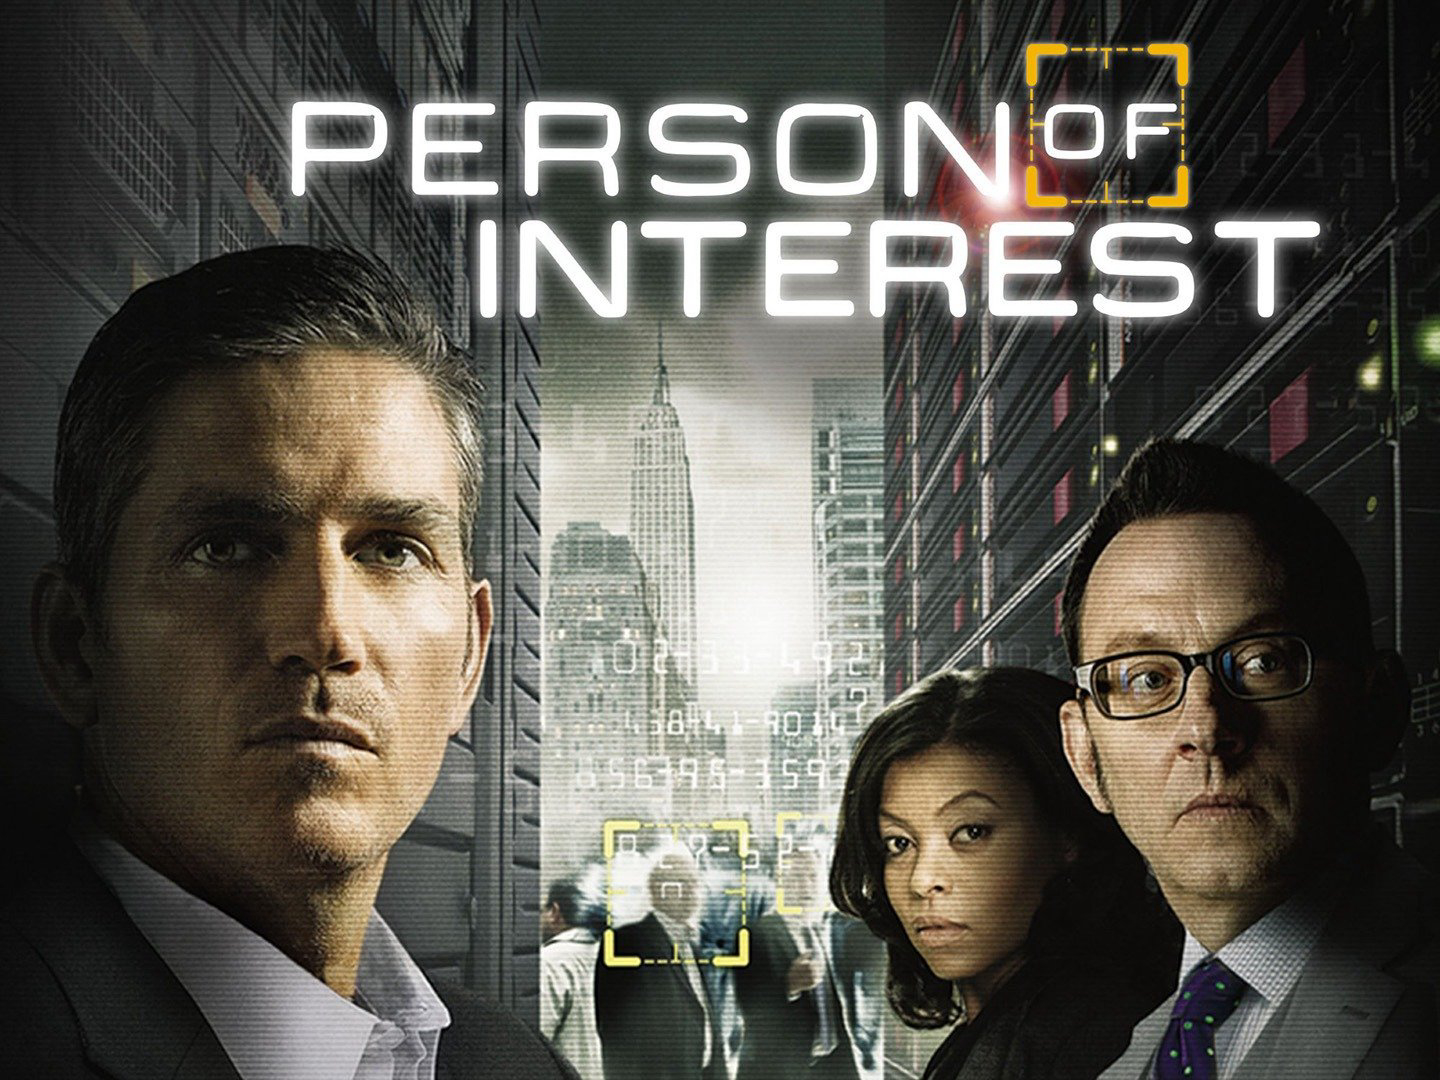 Person of Interest (Season 1) / Person of Interest (Season 1) (2011)